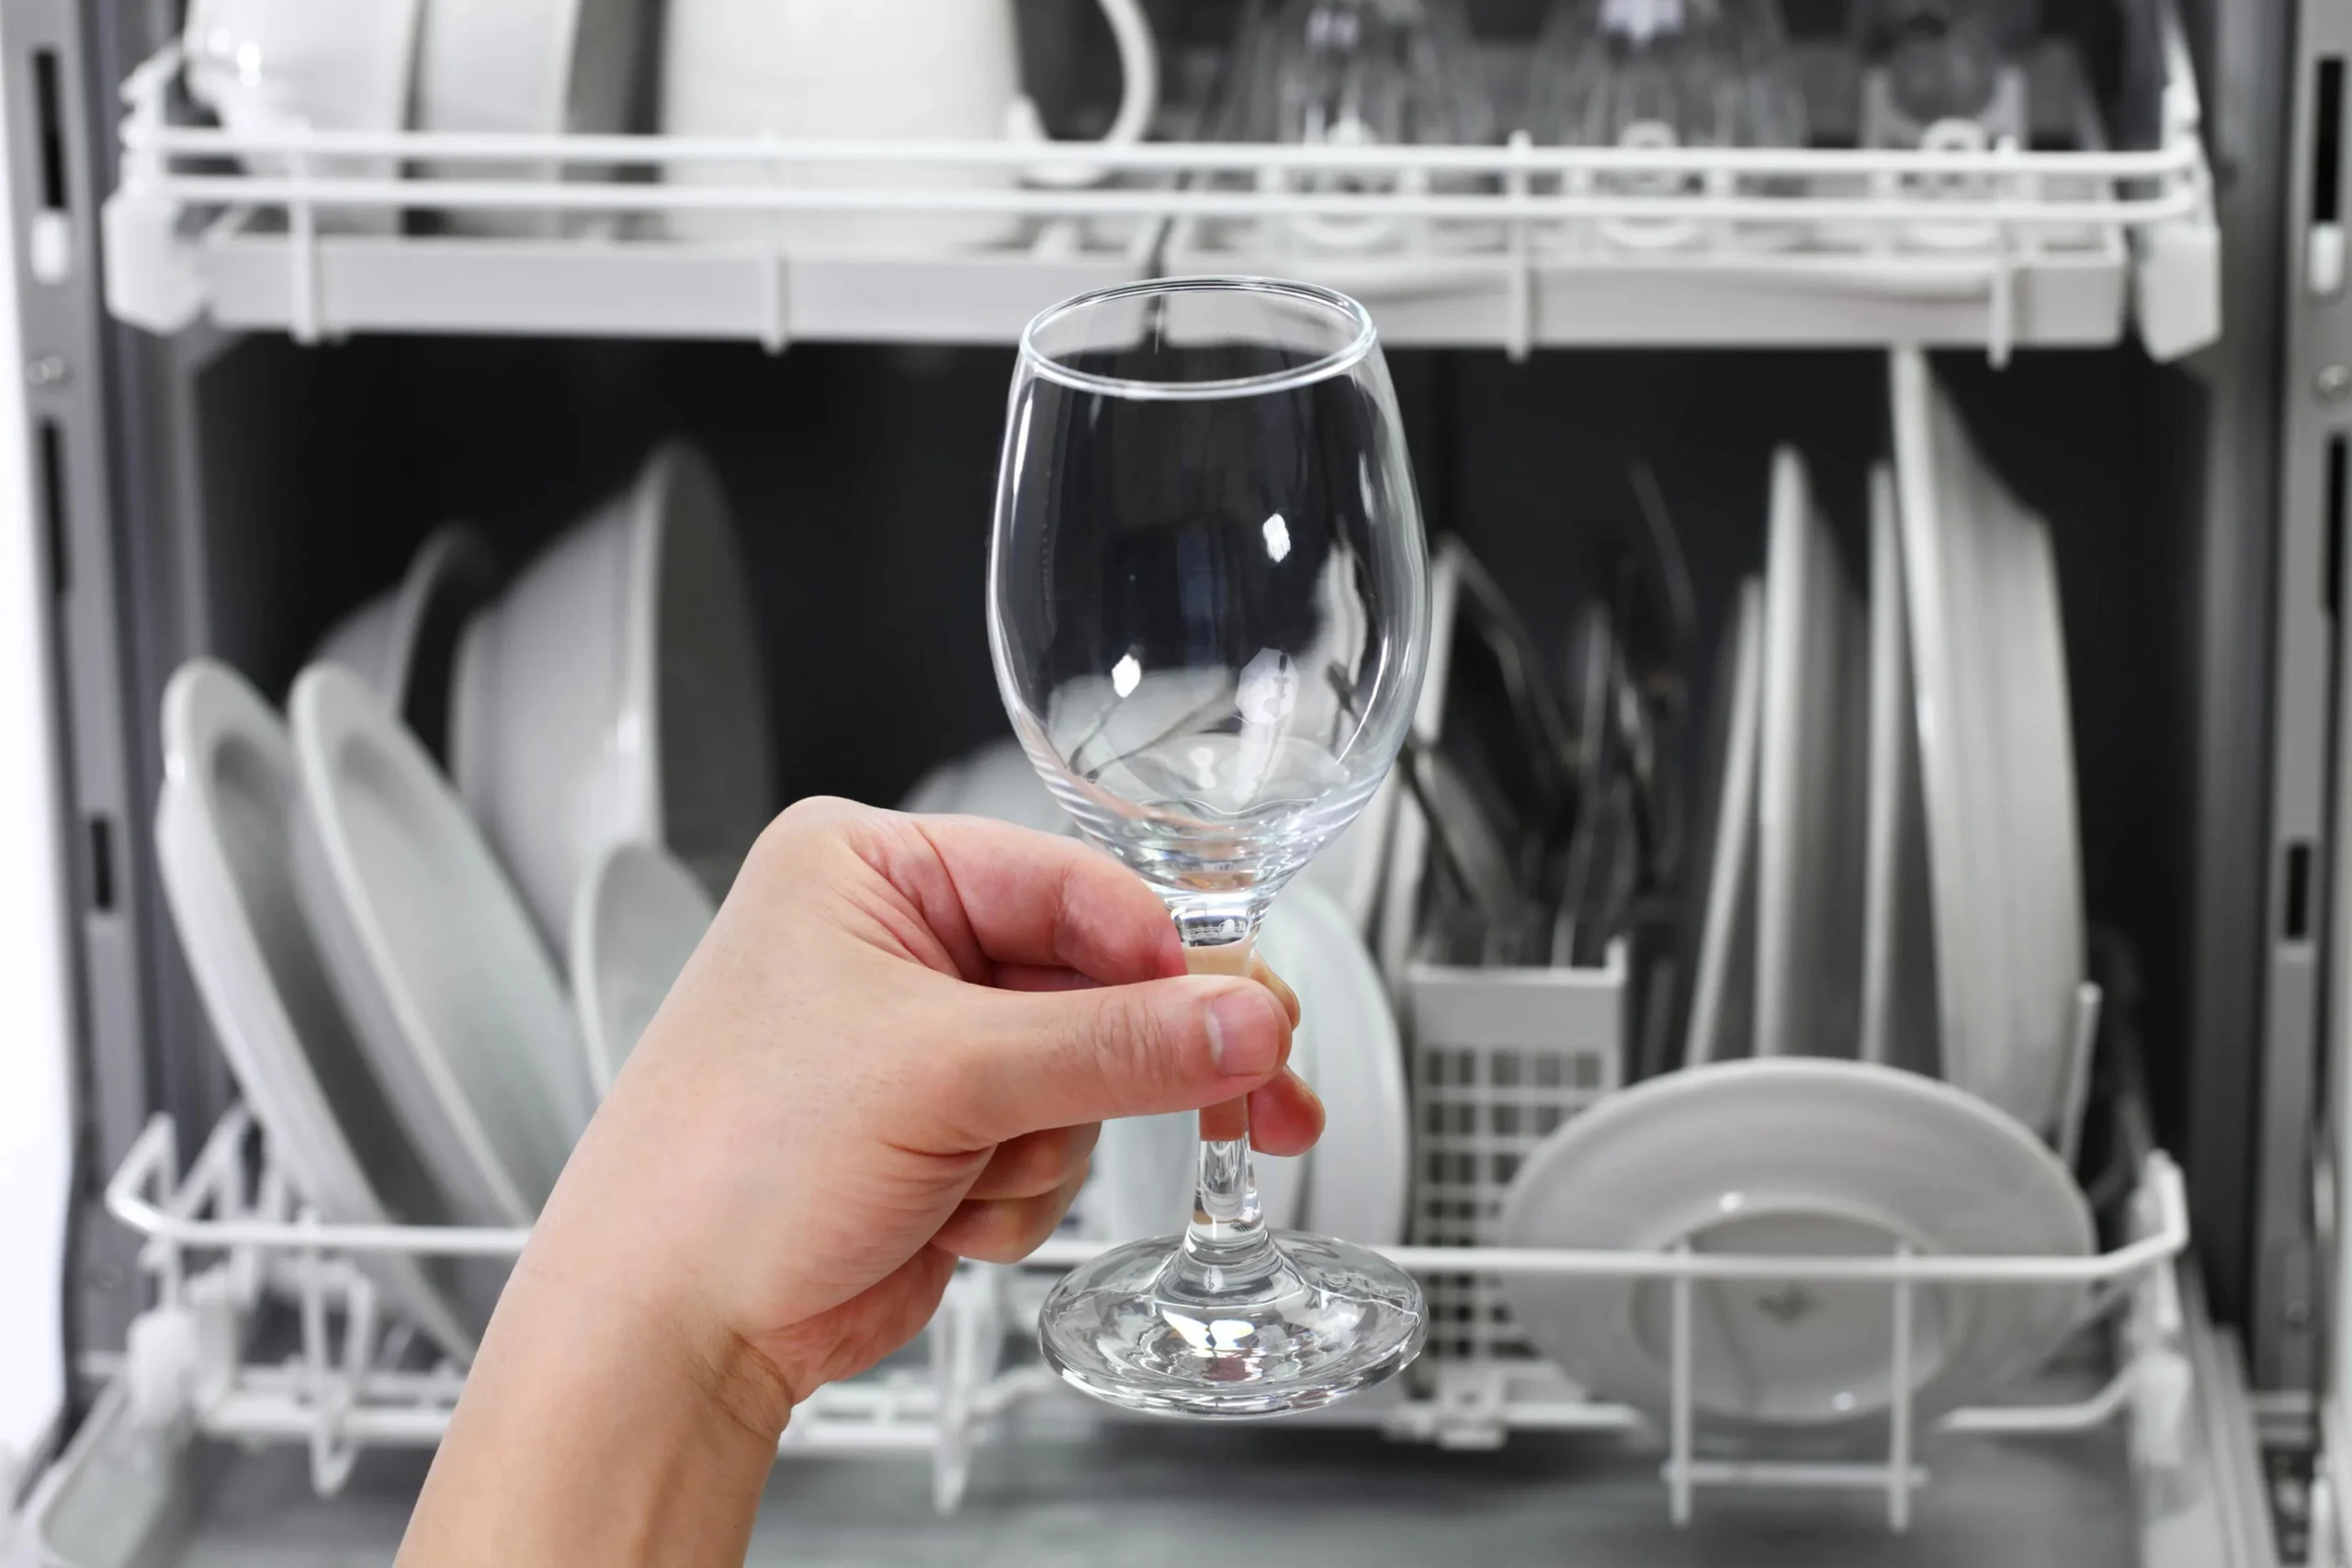 como quitar las manchas blancas de los vasos del lavavajillas - Cómo quitar las manchas blancas del vidrio